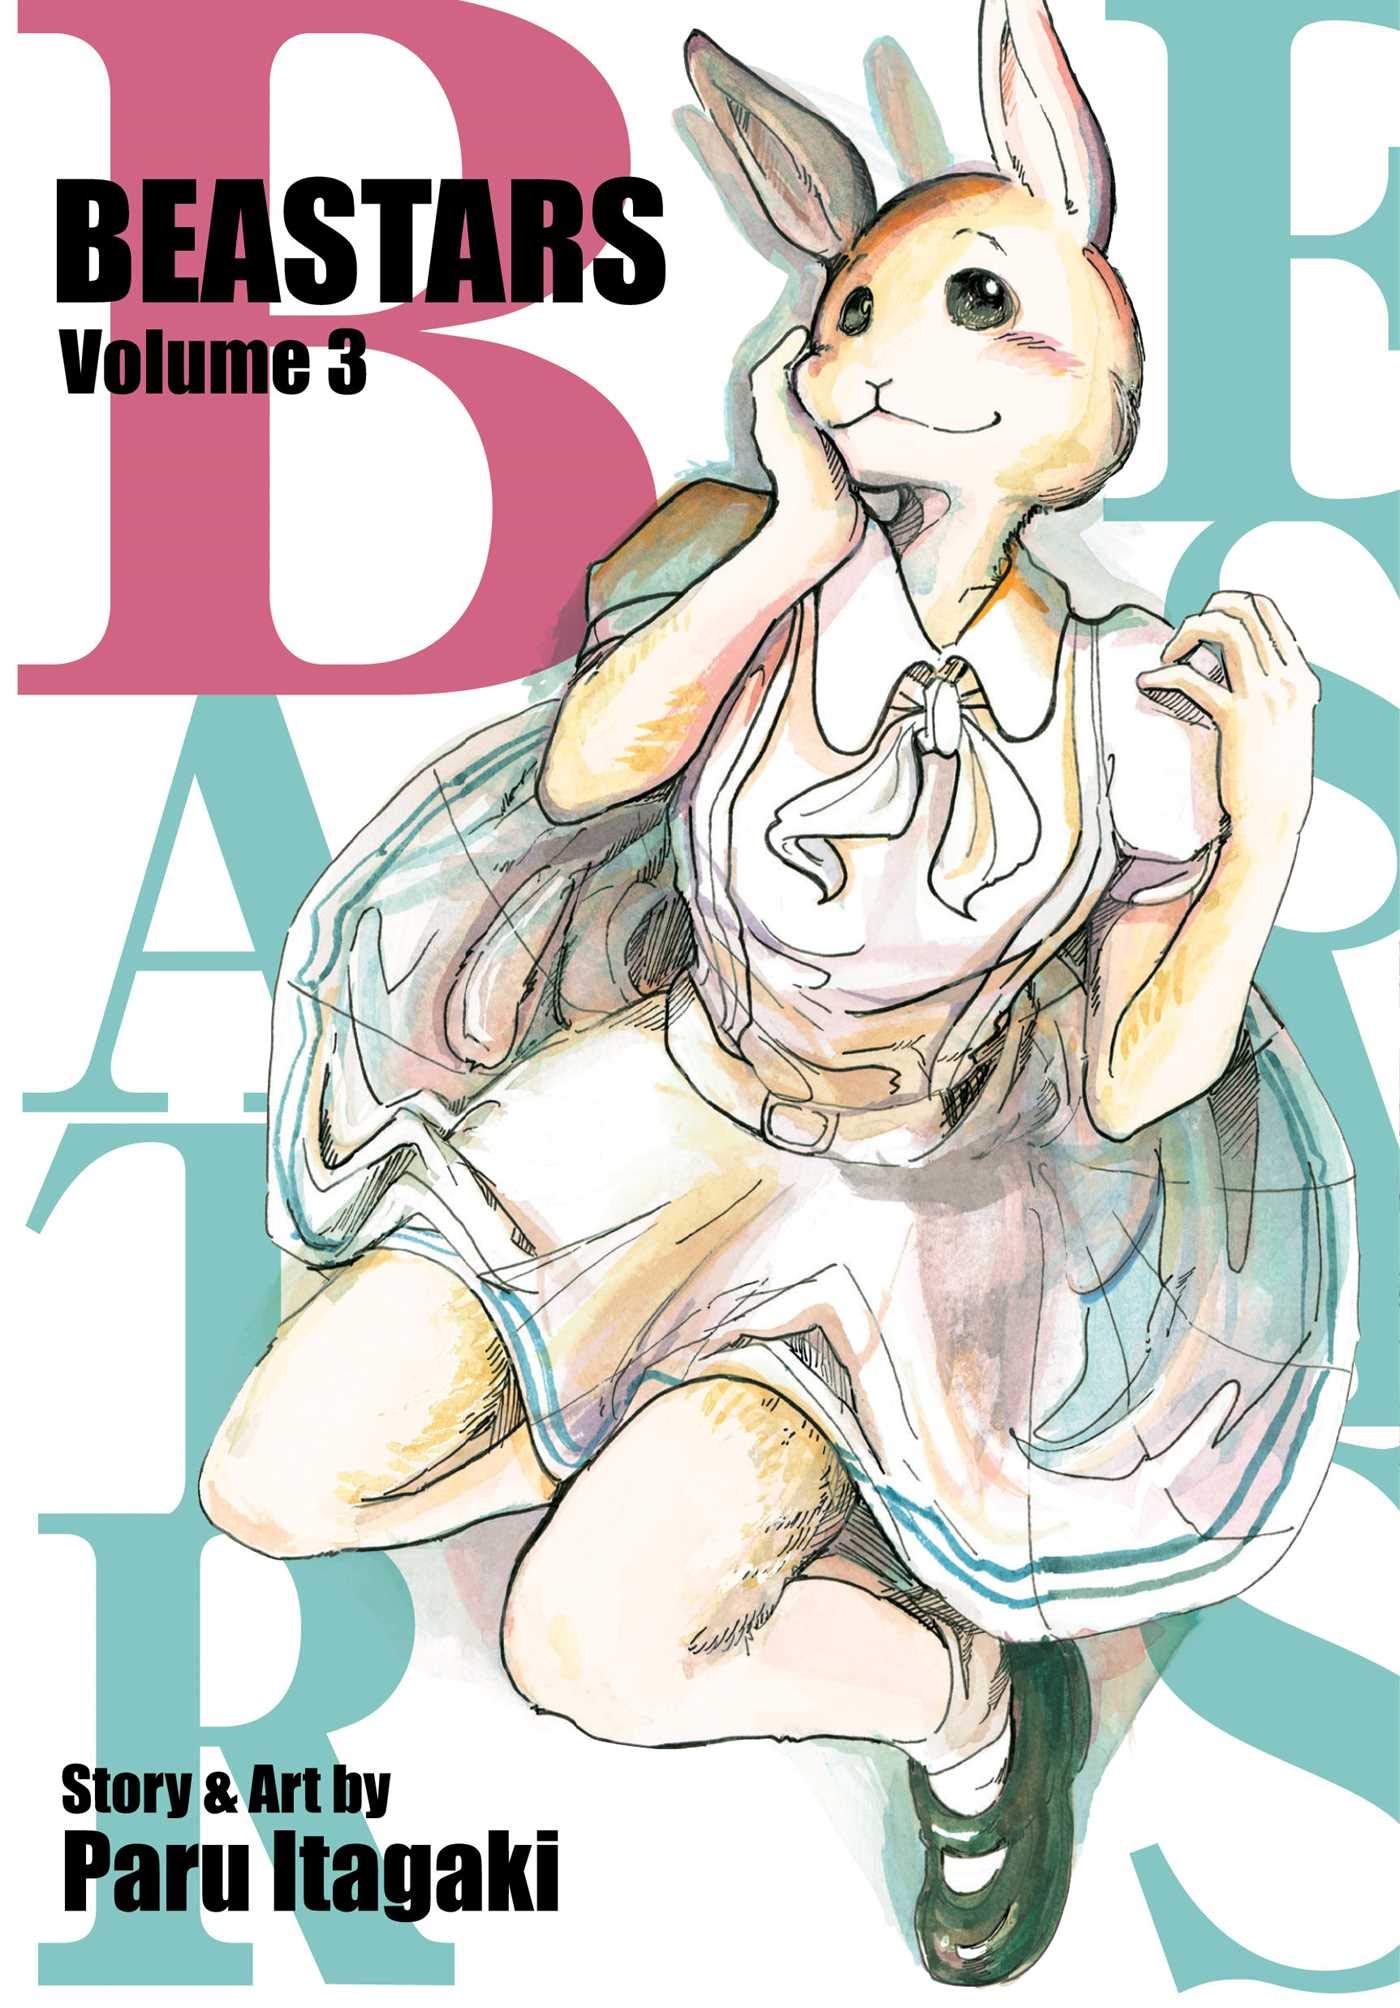 Beastars - Volume 3 | Paru Itagaki image6